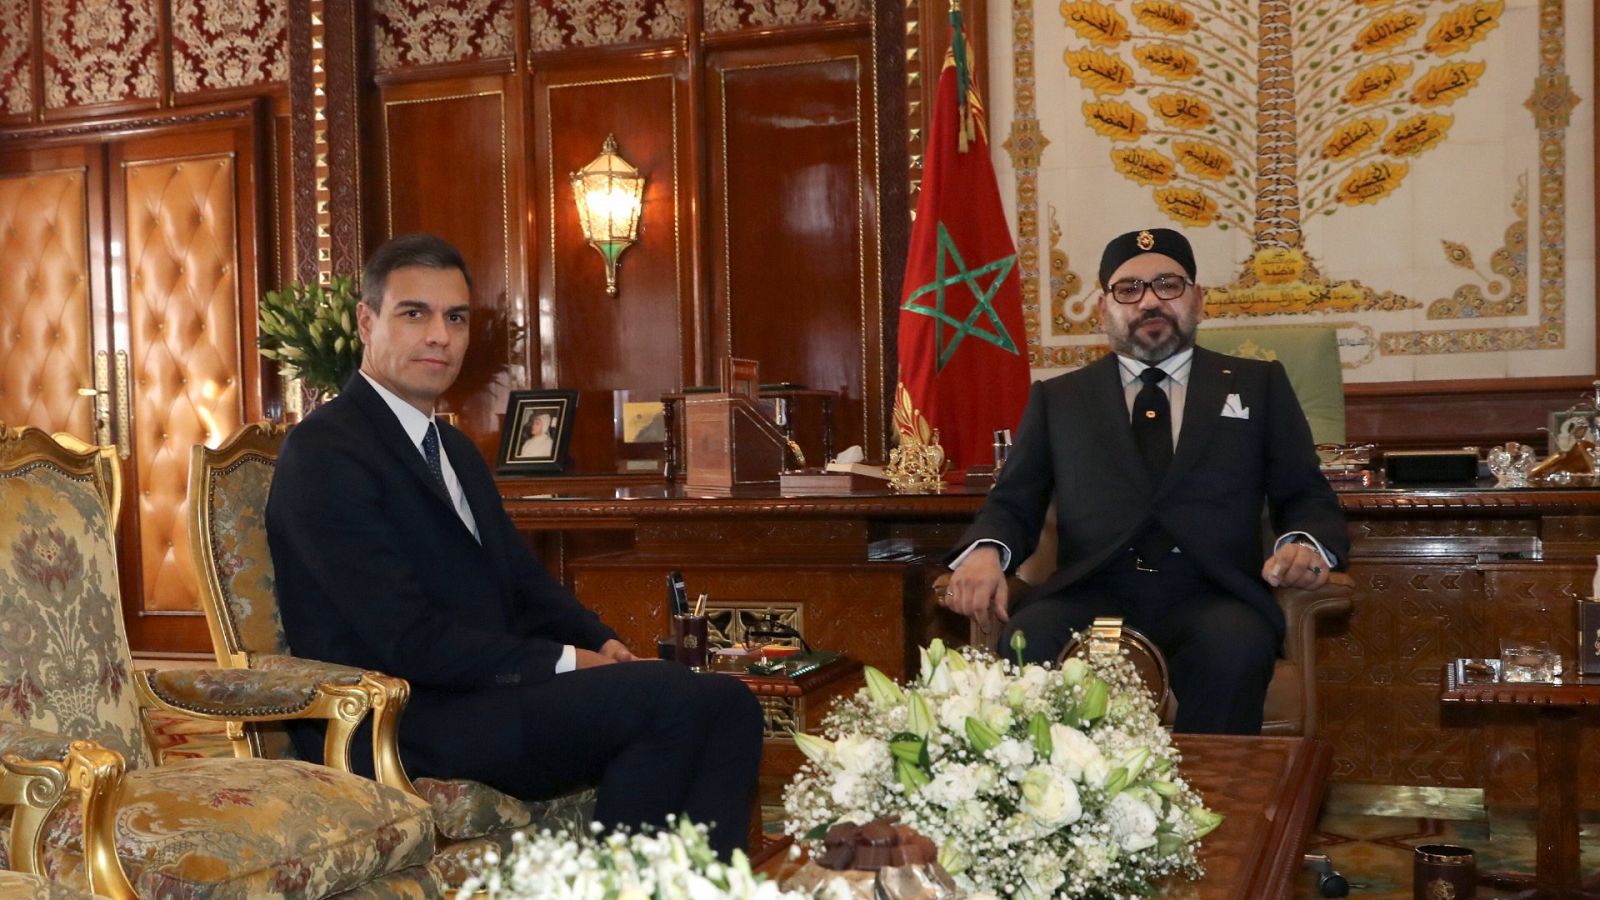 España apoya la propuesta marroquí sobre la autonomía del Sáhara Occidental